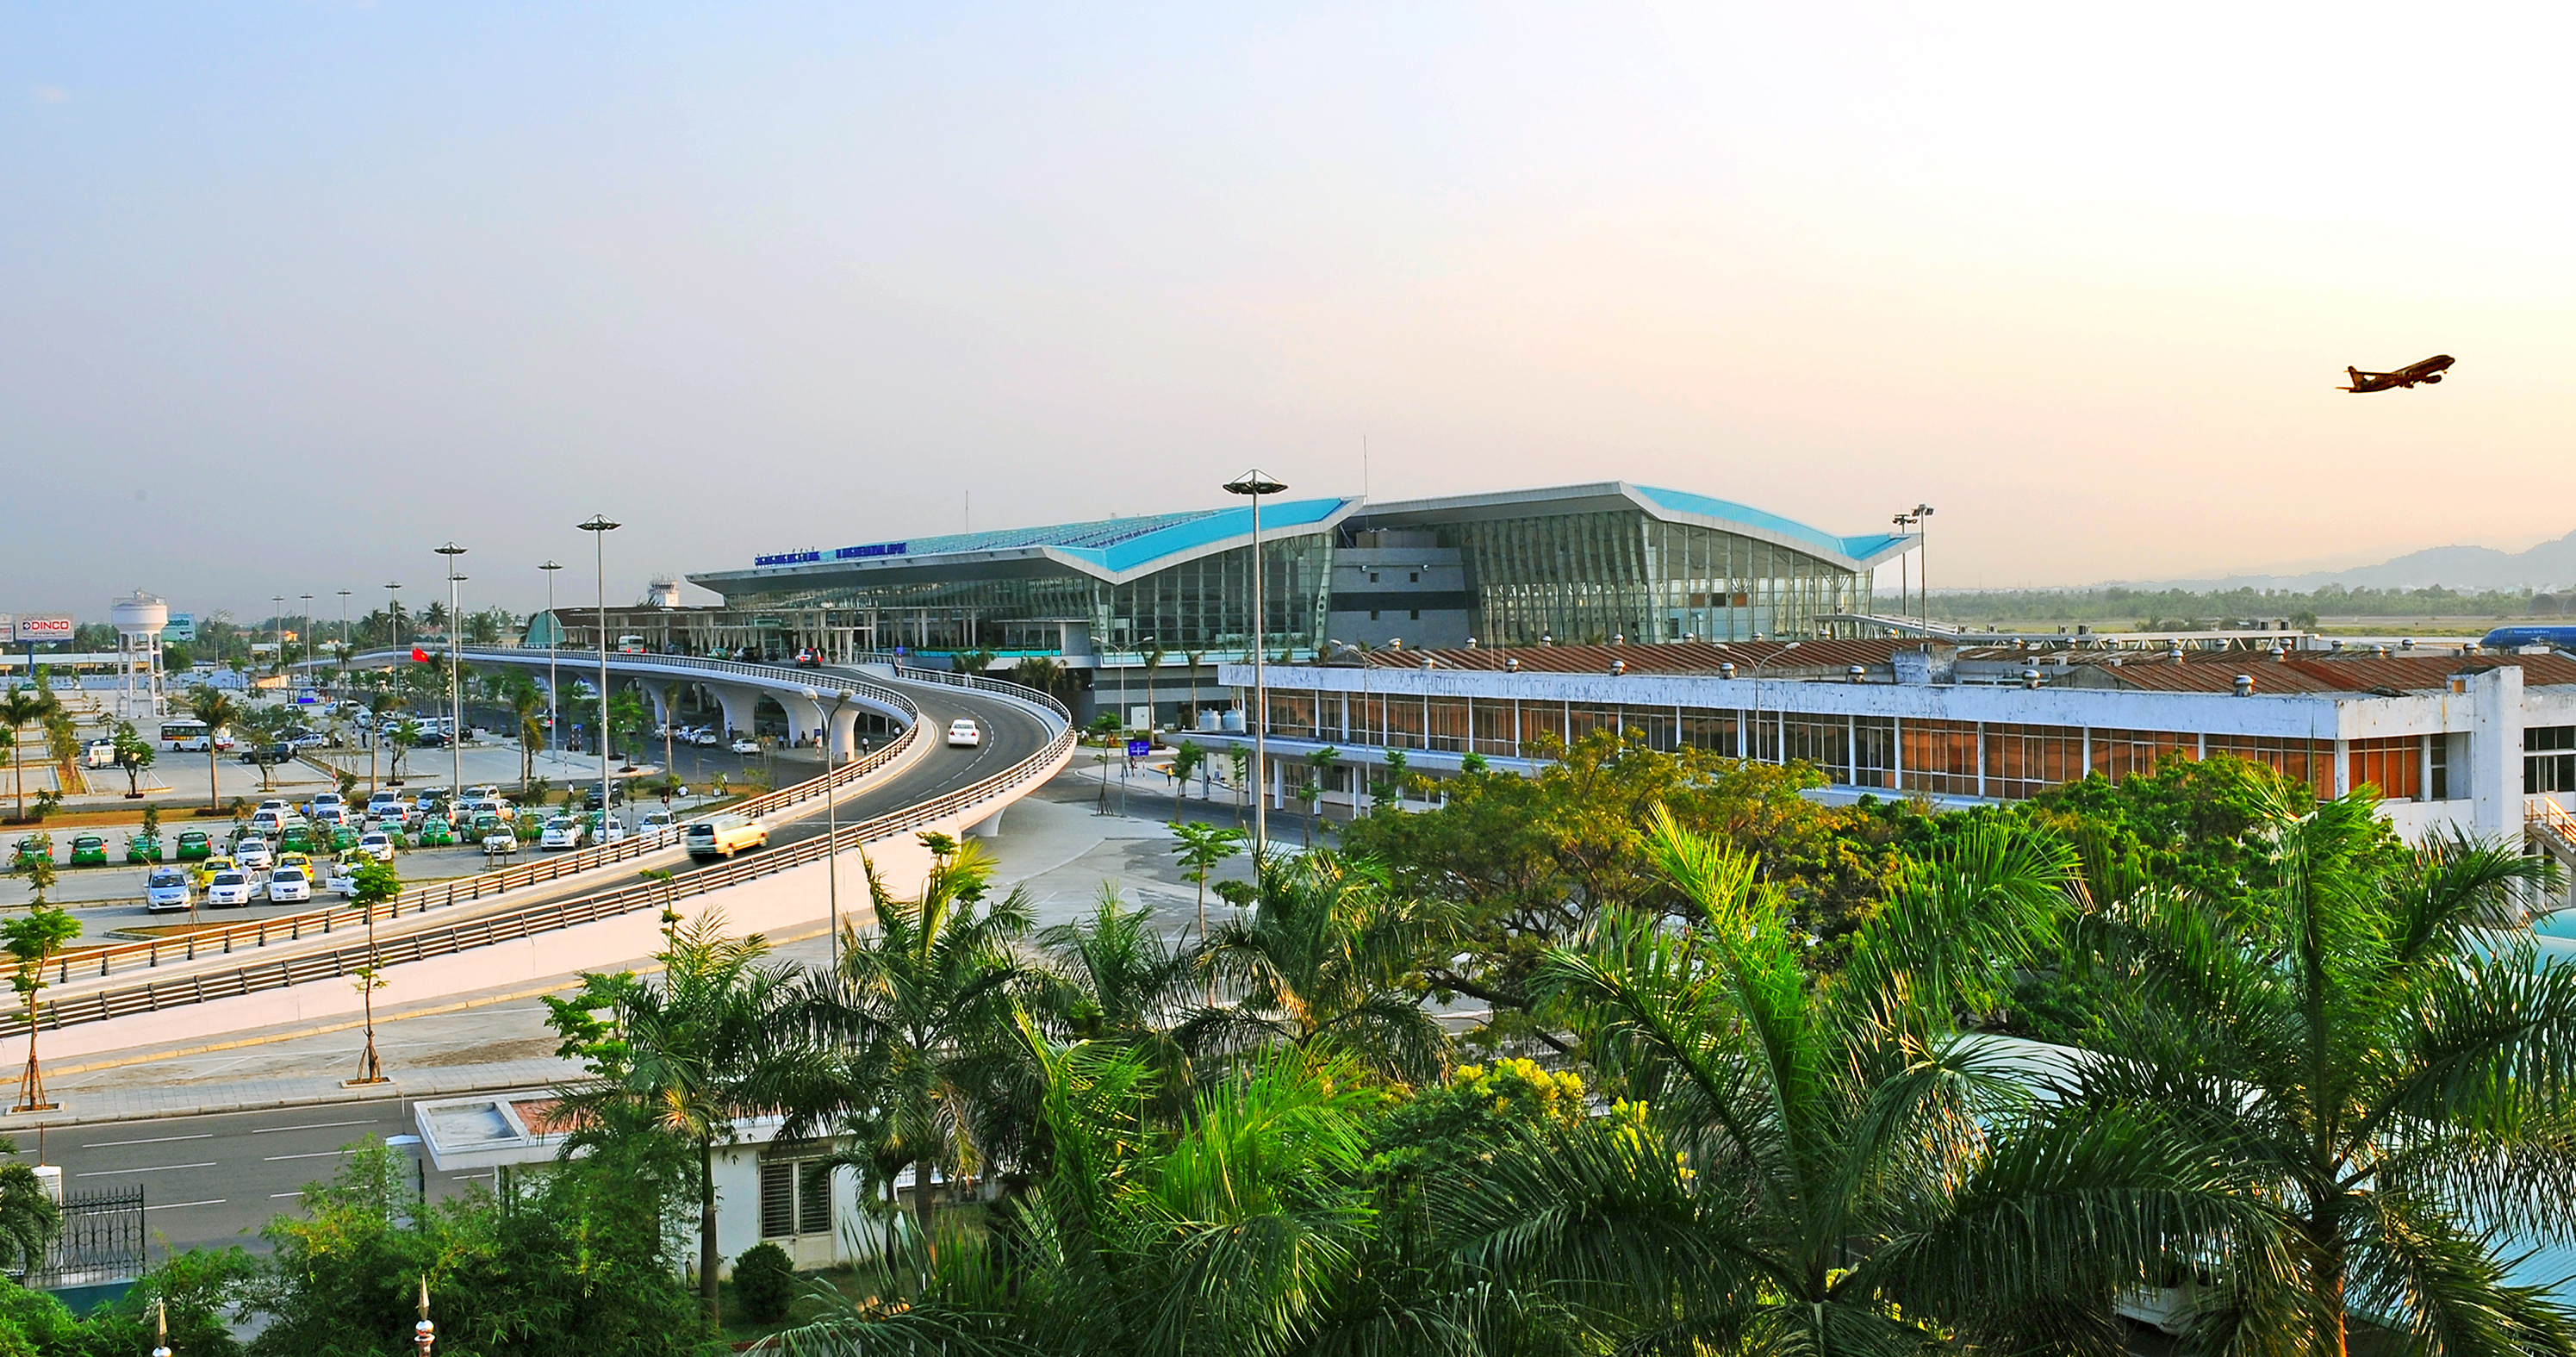 岘港国际机场 Da Nang International Airport 是一个位于越南中部最大城市岘港的机场。